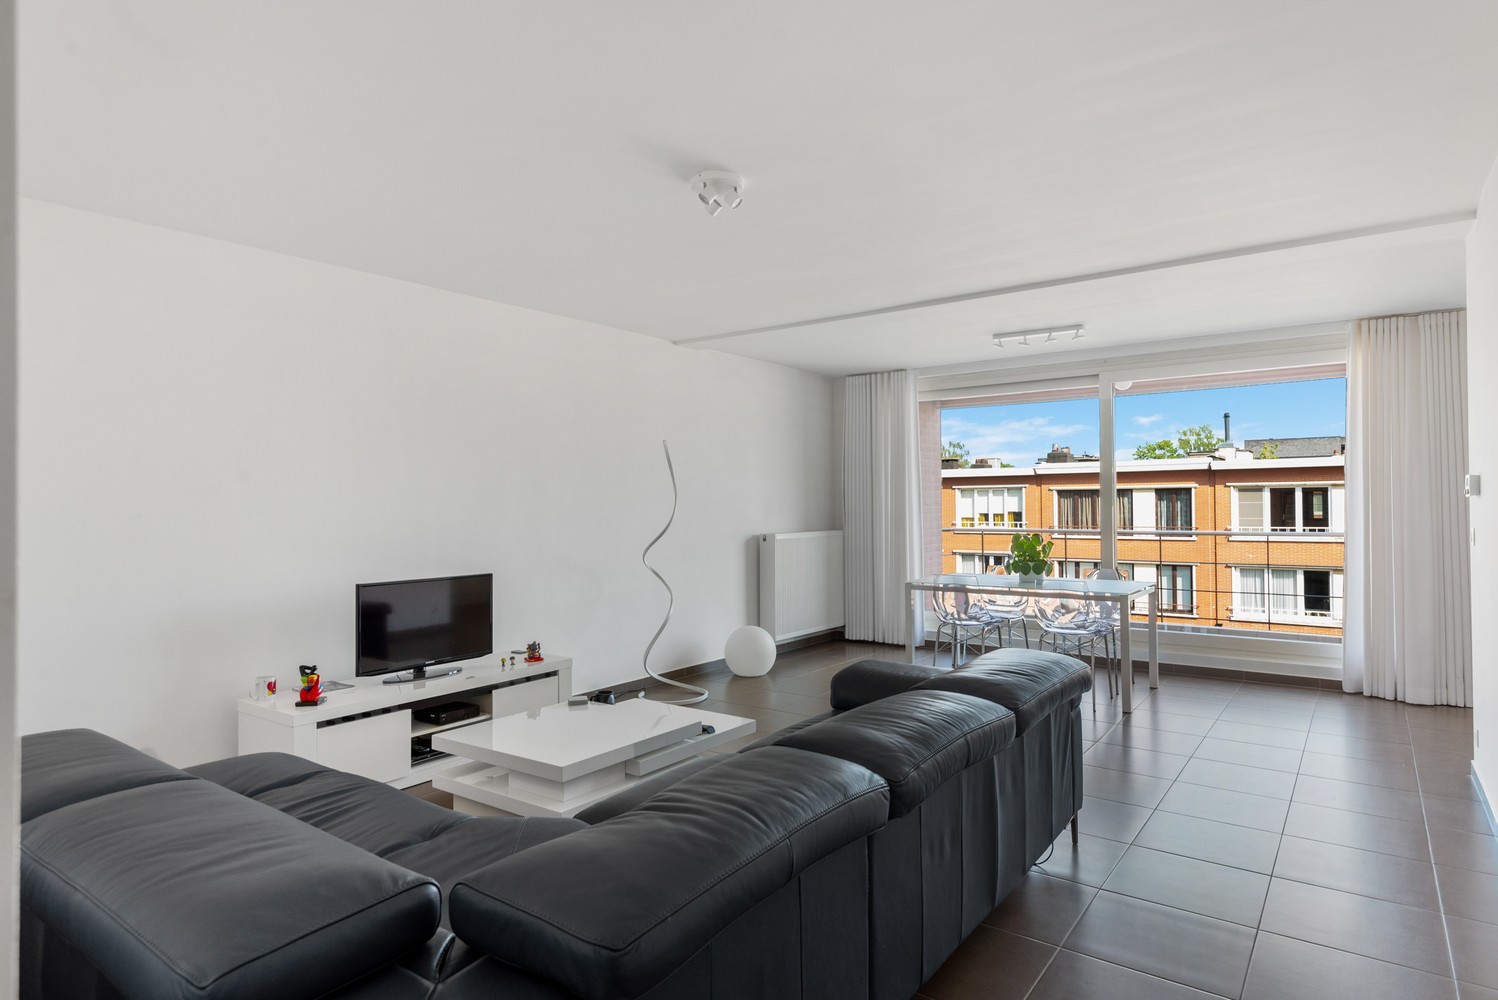 Ruim, lichtrijk & energiezuinig appartement met 2 slaapkamers & zonnig terras in Deurne! afbeelding 2